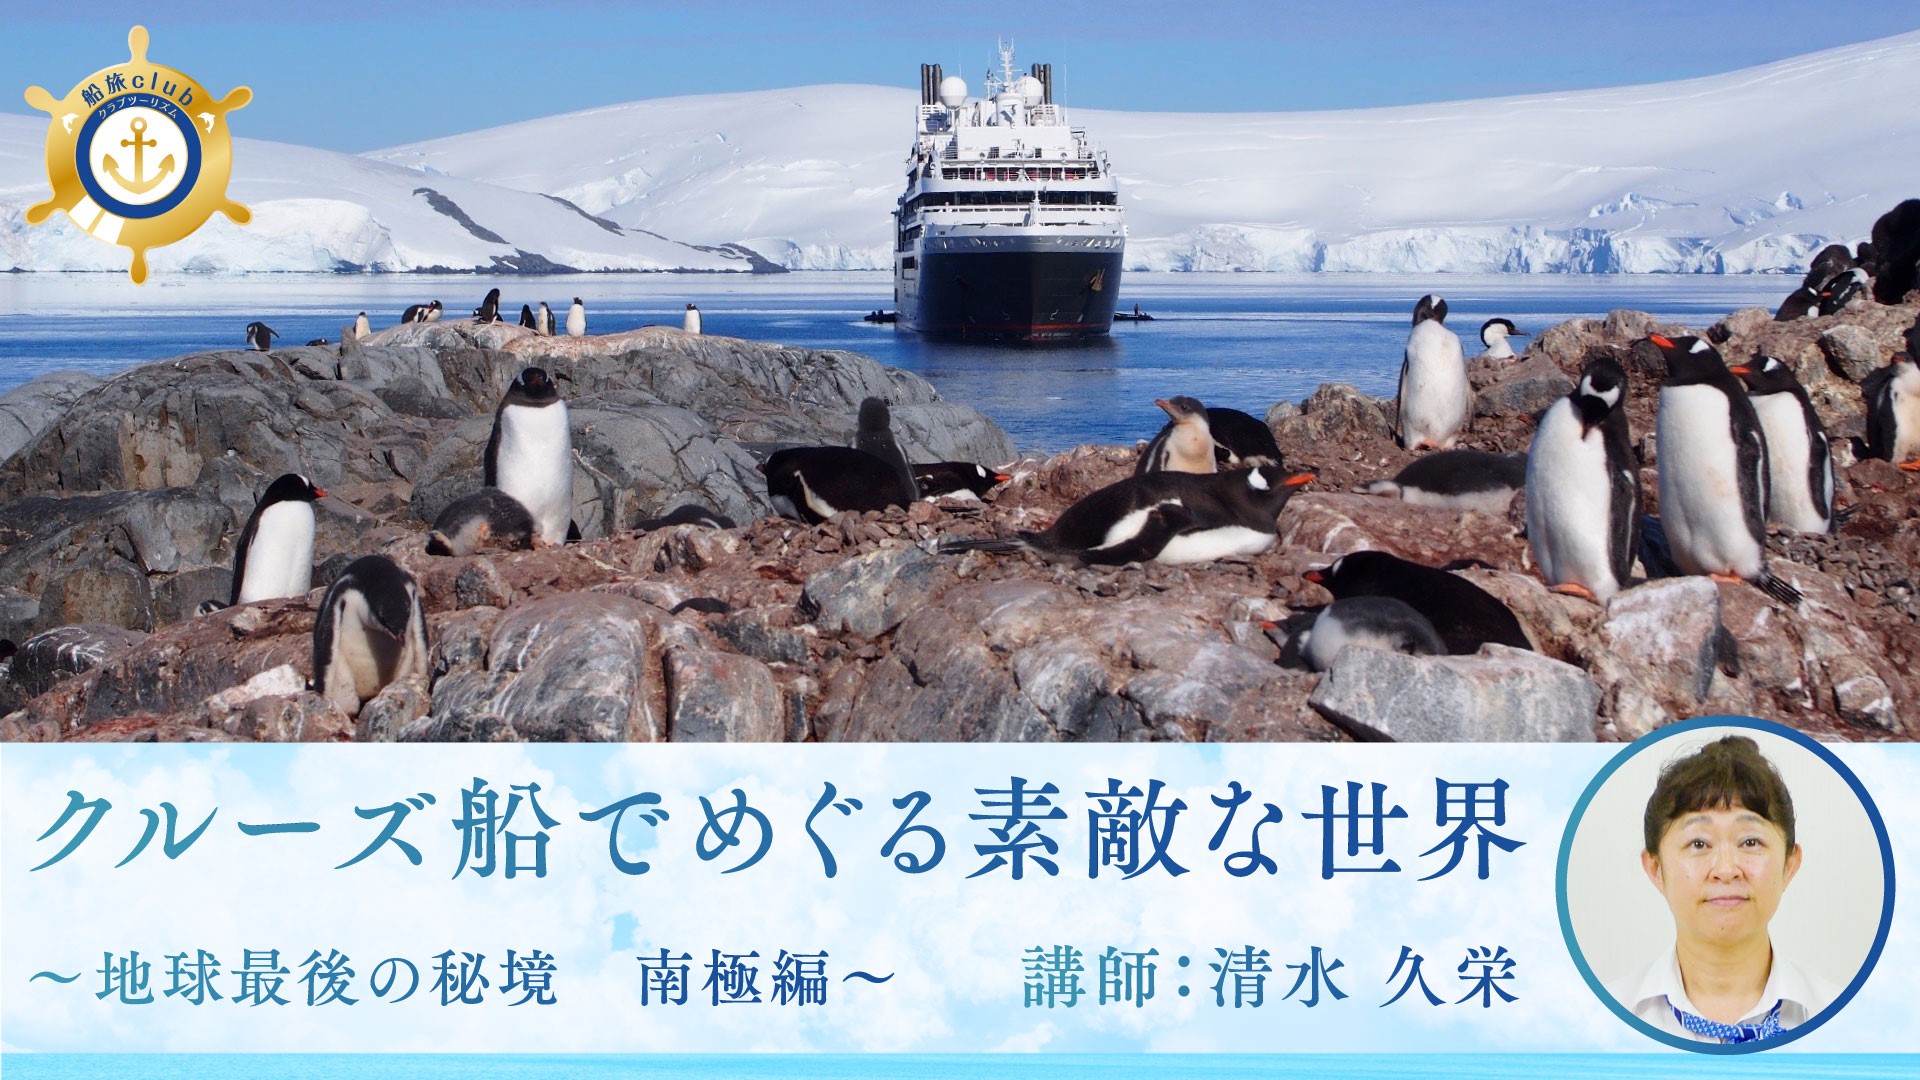 【船旅】世界最後の秘境 南極編